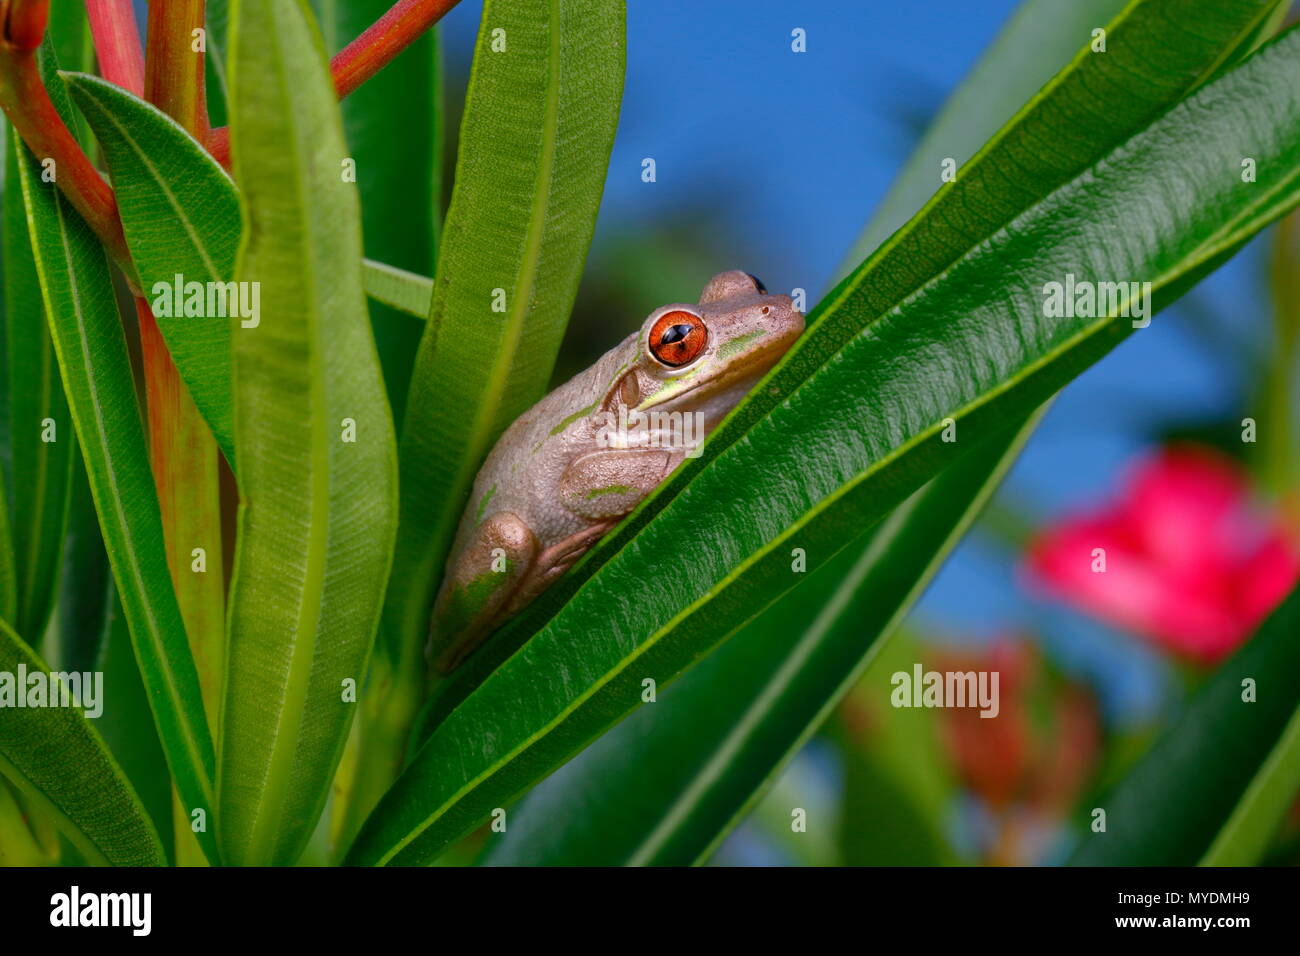 Una rana de árbol de Cuba, Osteopilus septentrionalis, buscaban comida y encaramado en el follaje. Foto de stock